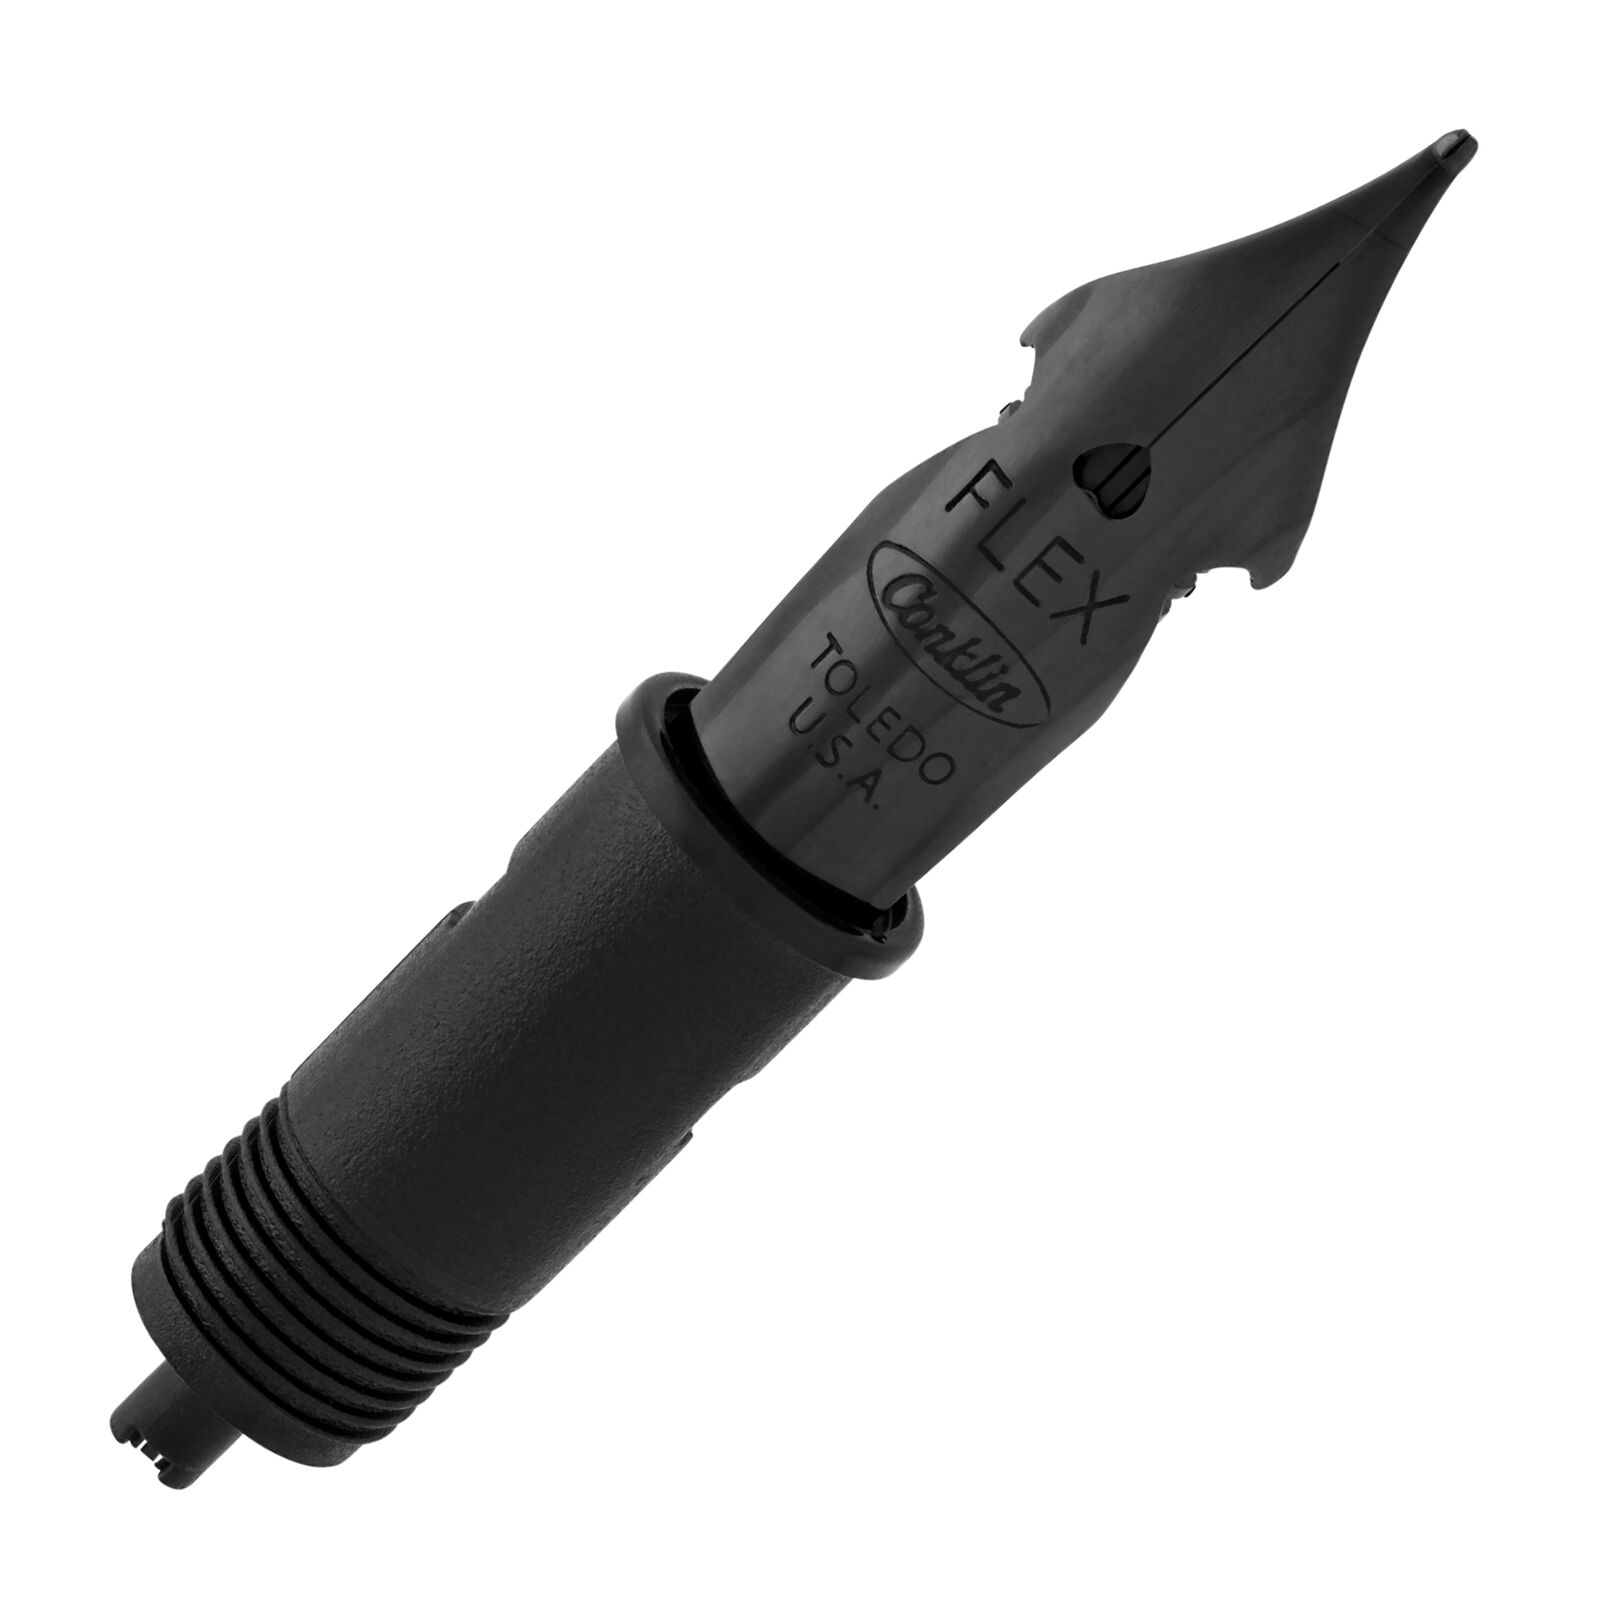 Conklin Fountain Pen in Stainless Steel Black - Omniflex Nib - NEW CK12135